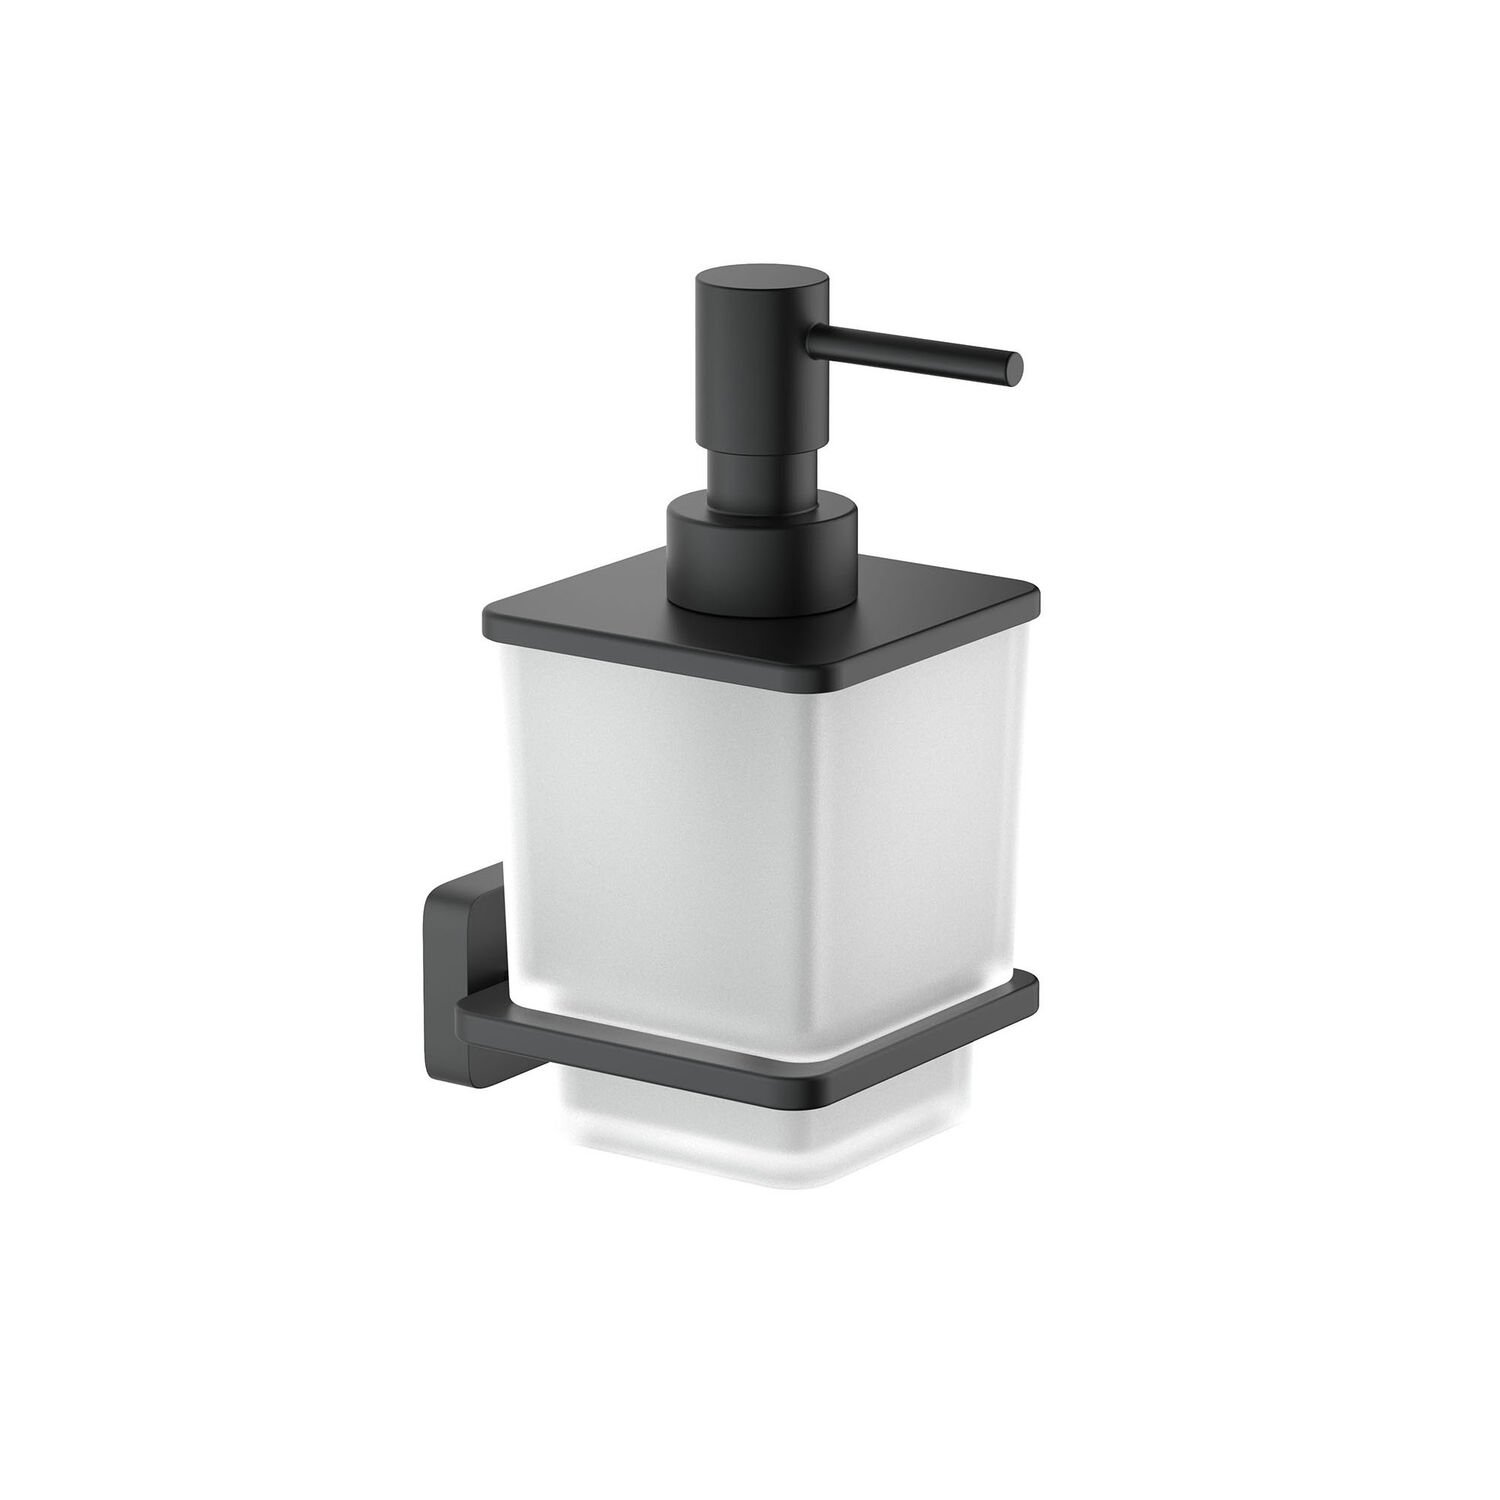 Дозатор Акватек Либра AQ4305MB для жидкого мыла, подвесной, цвет черный матовый